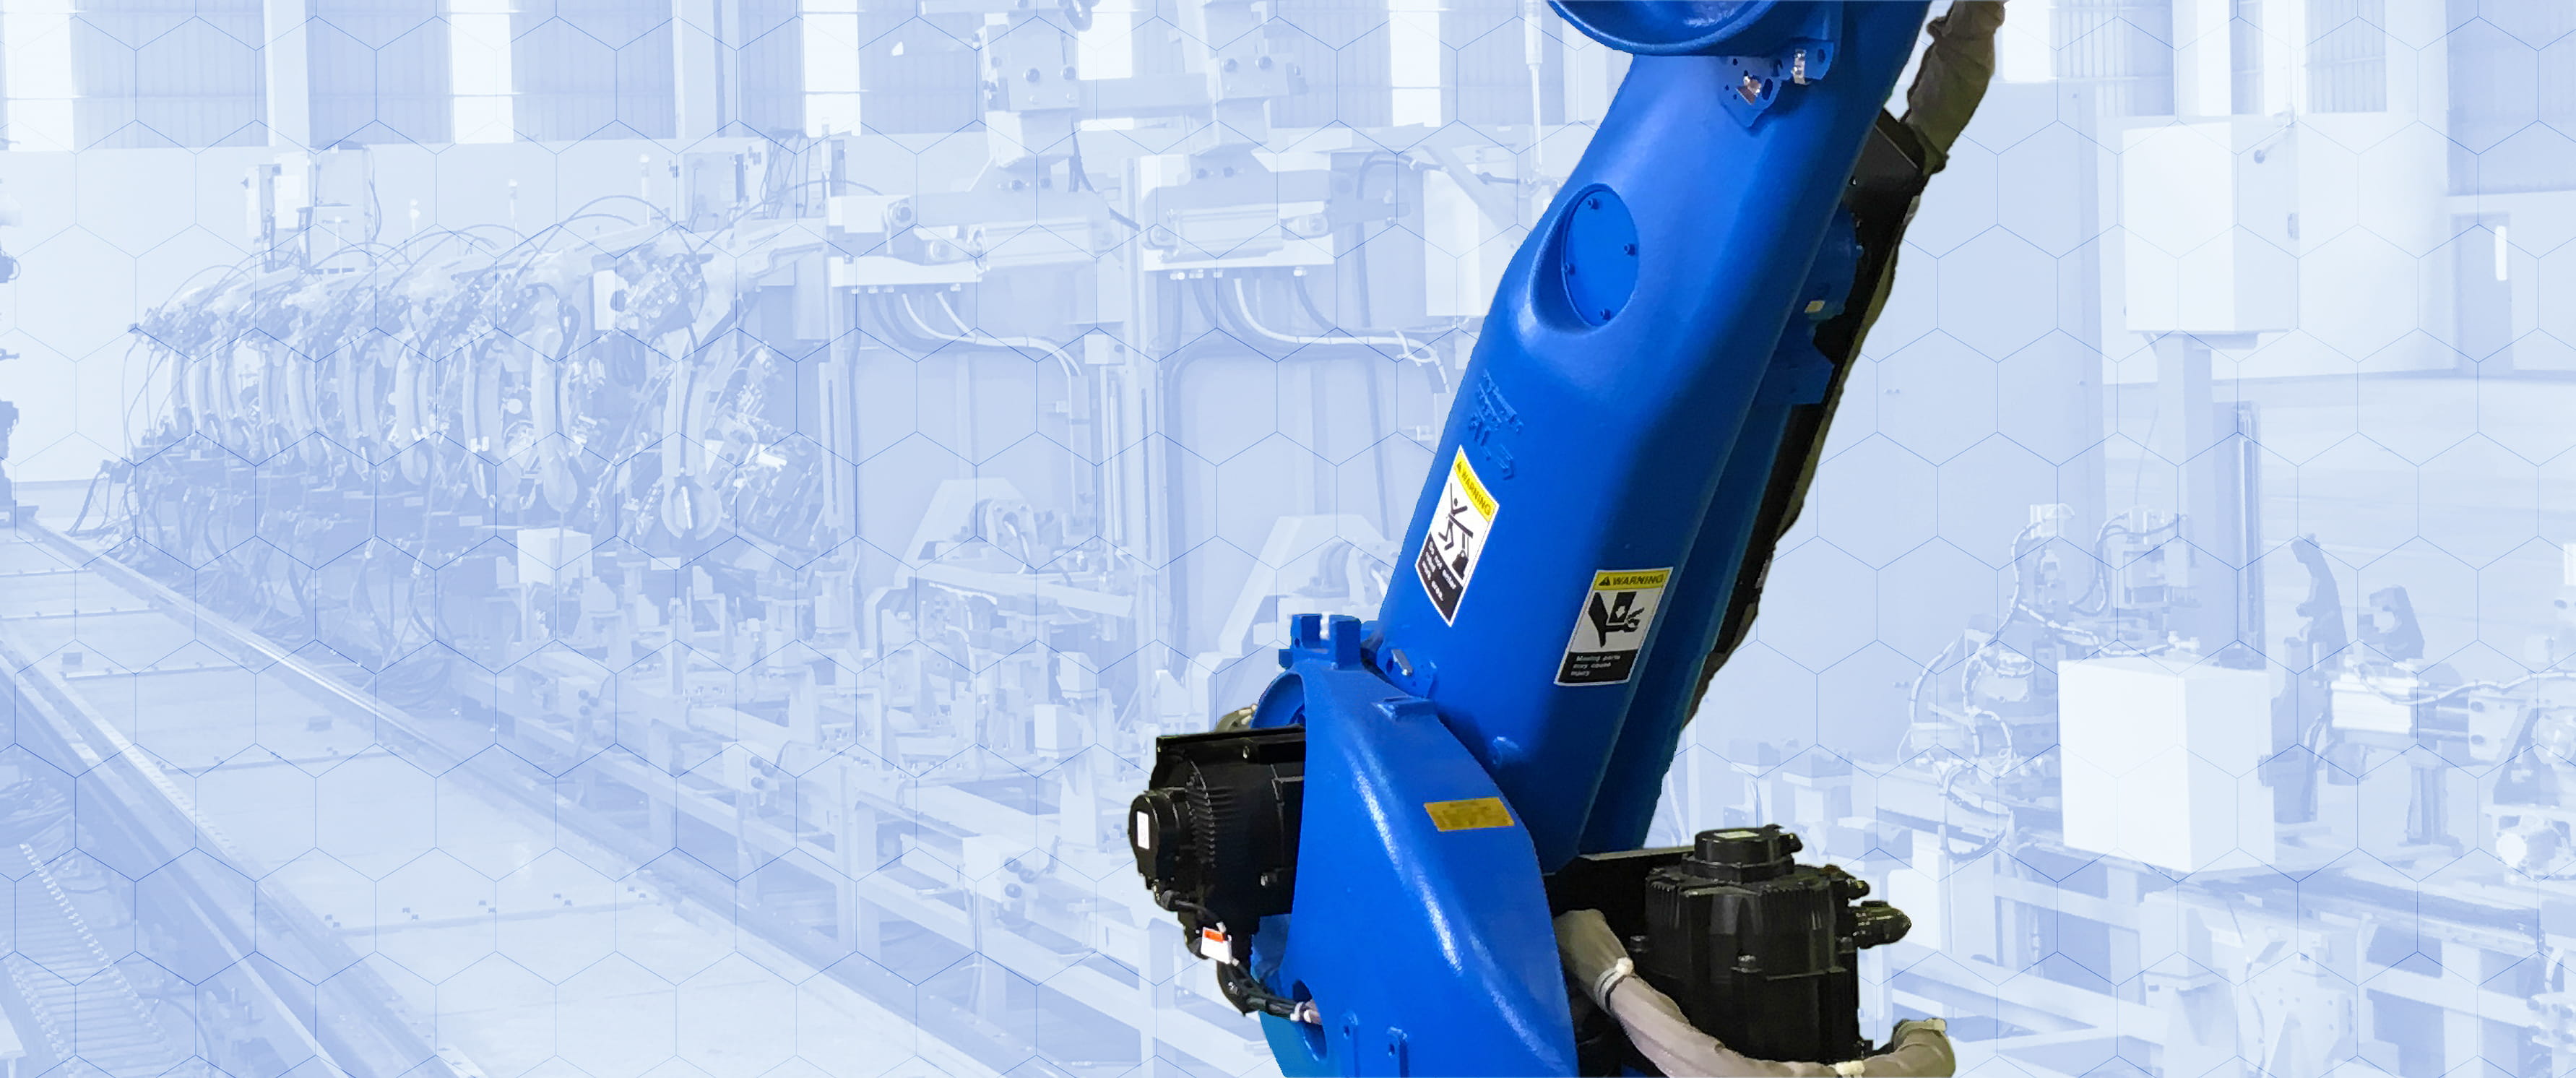 青い機体の自動ロボットが、製造工場内のレールを動きながら作業をしている様子